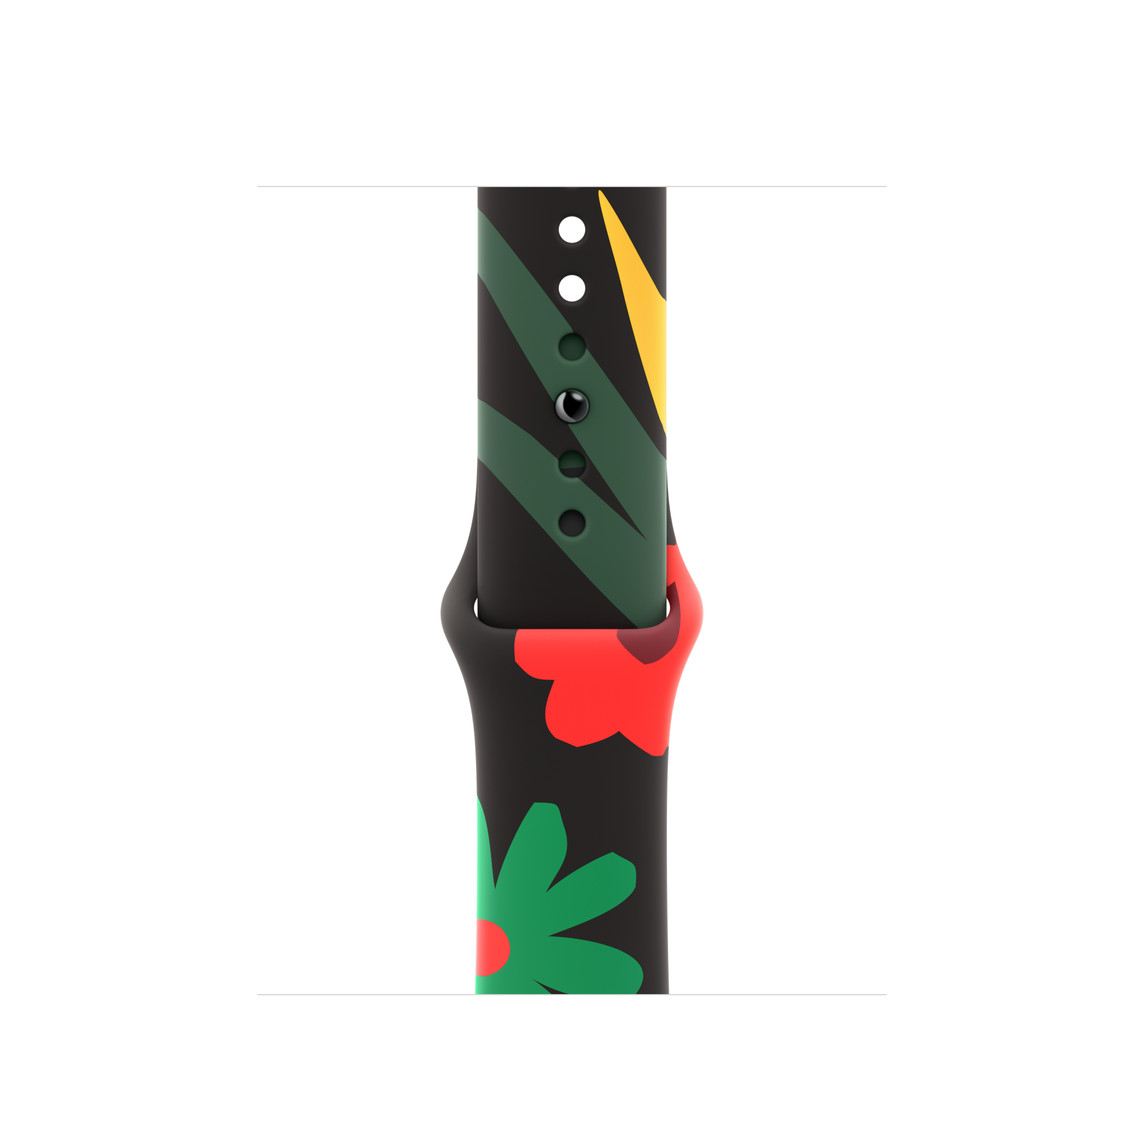 Cinturino Sport Black Unity Fiori dell’unità, abbellito da fiori illustrati di diverse forme e dimensioni disegnati in uno stile semplicistico e in varie tonalità del rosso, verde e giallo, chiusura pin-and-tuck.